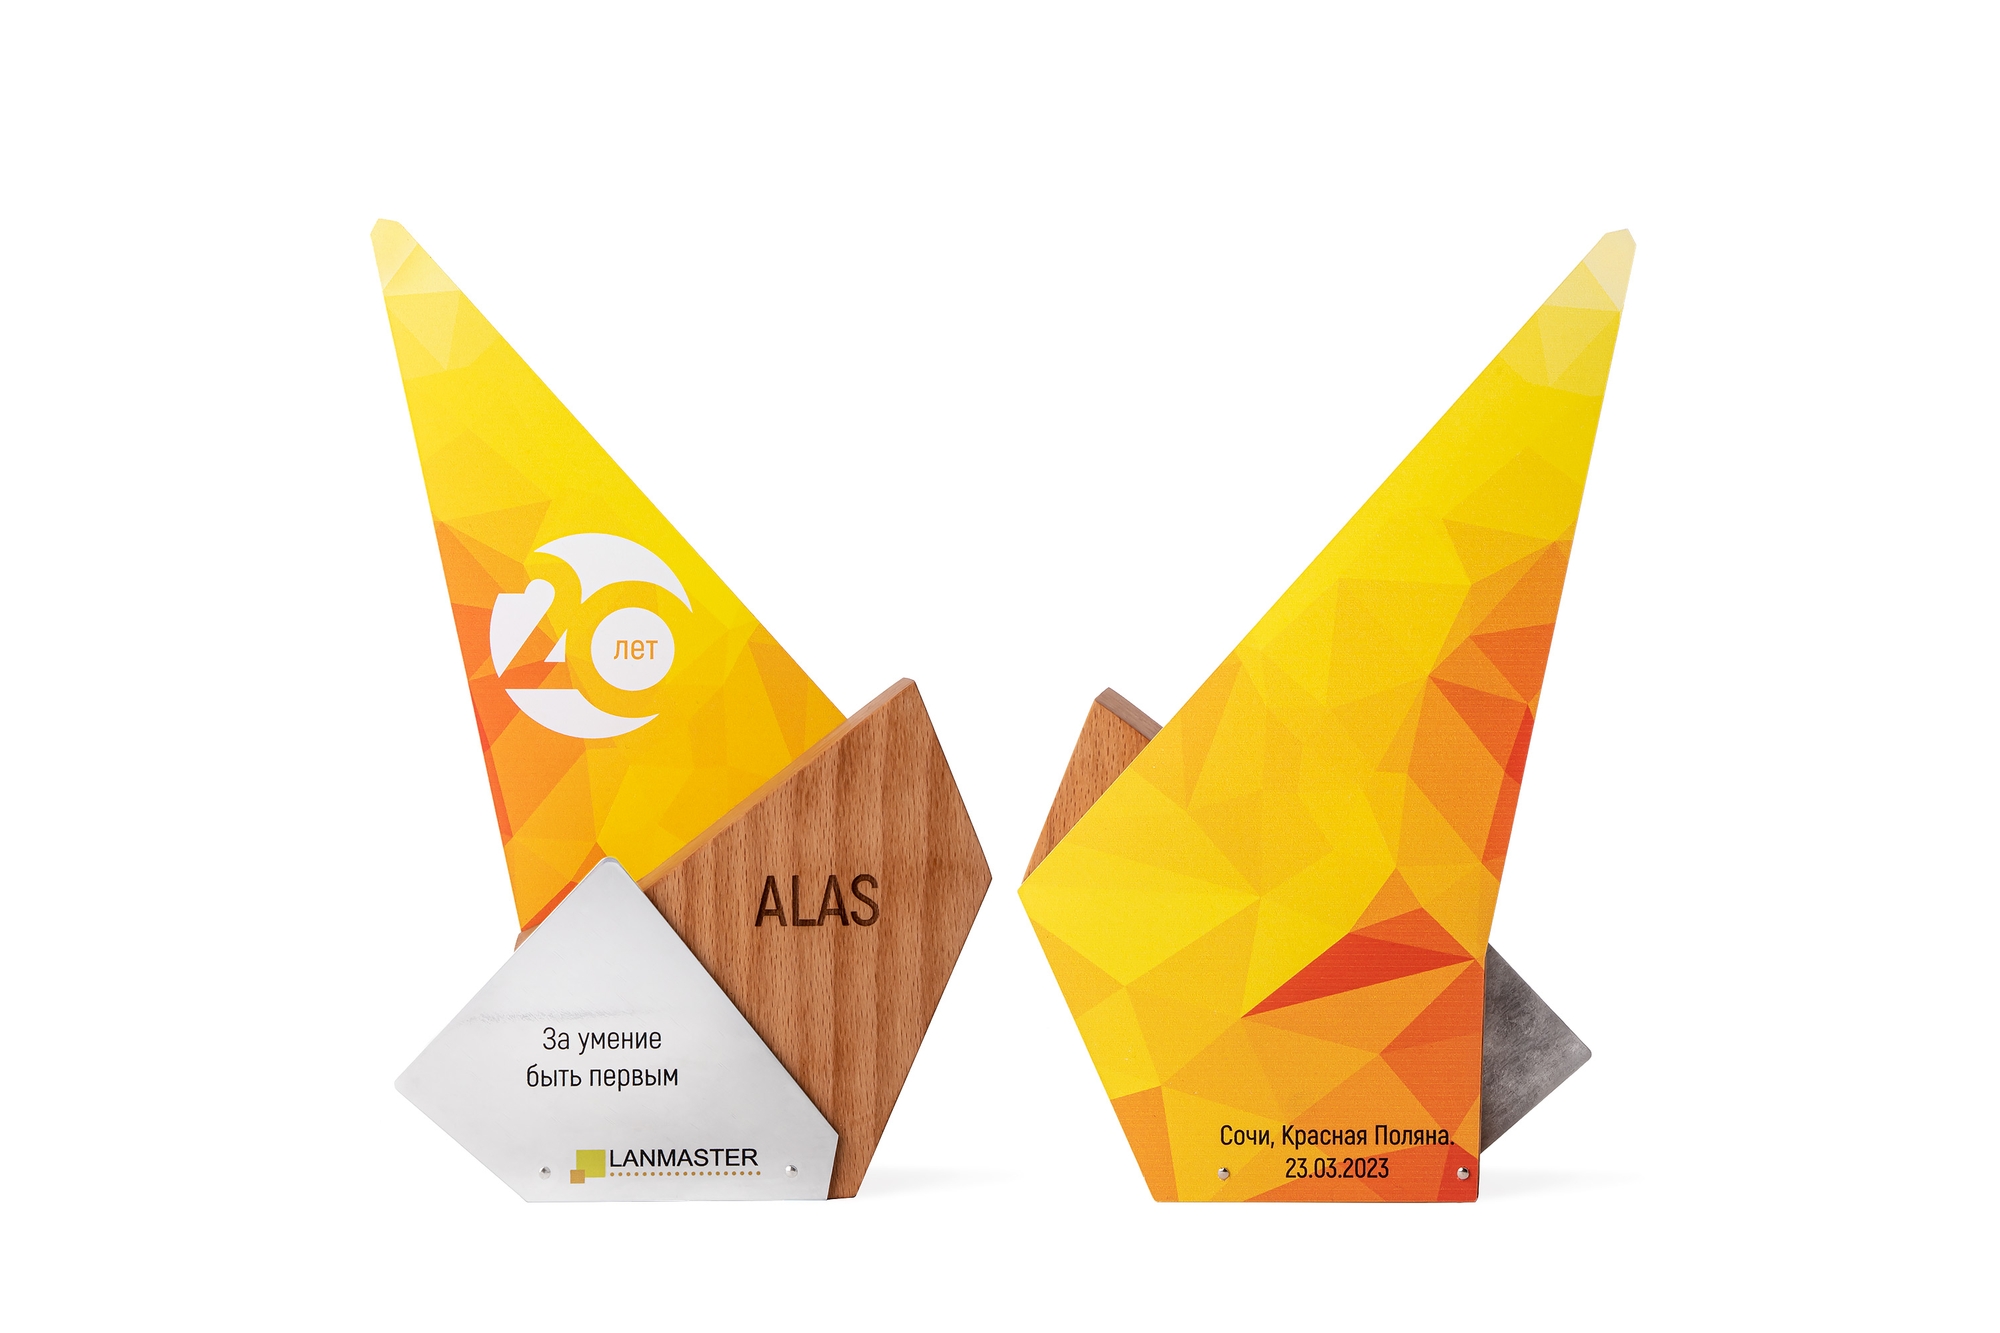 Компания АЛАС за 2022 год получила награду LANMASTER За умение быть первым